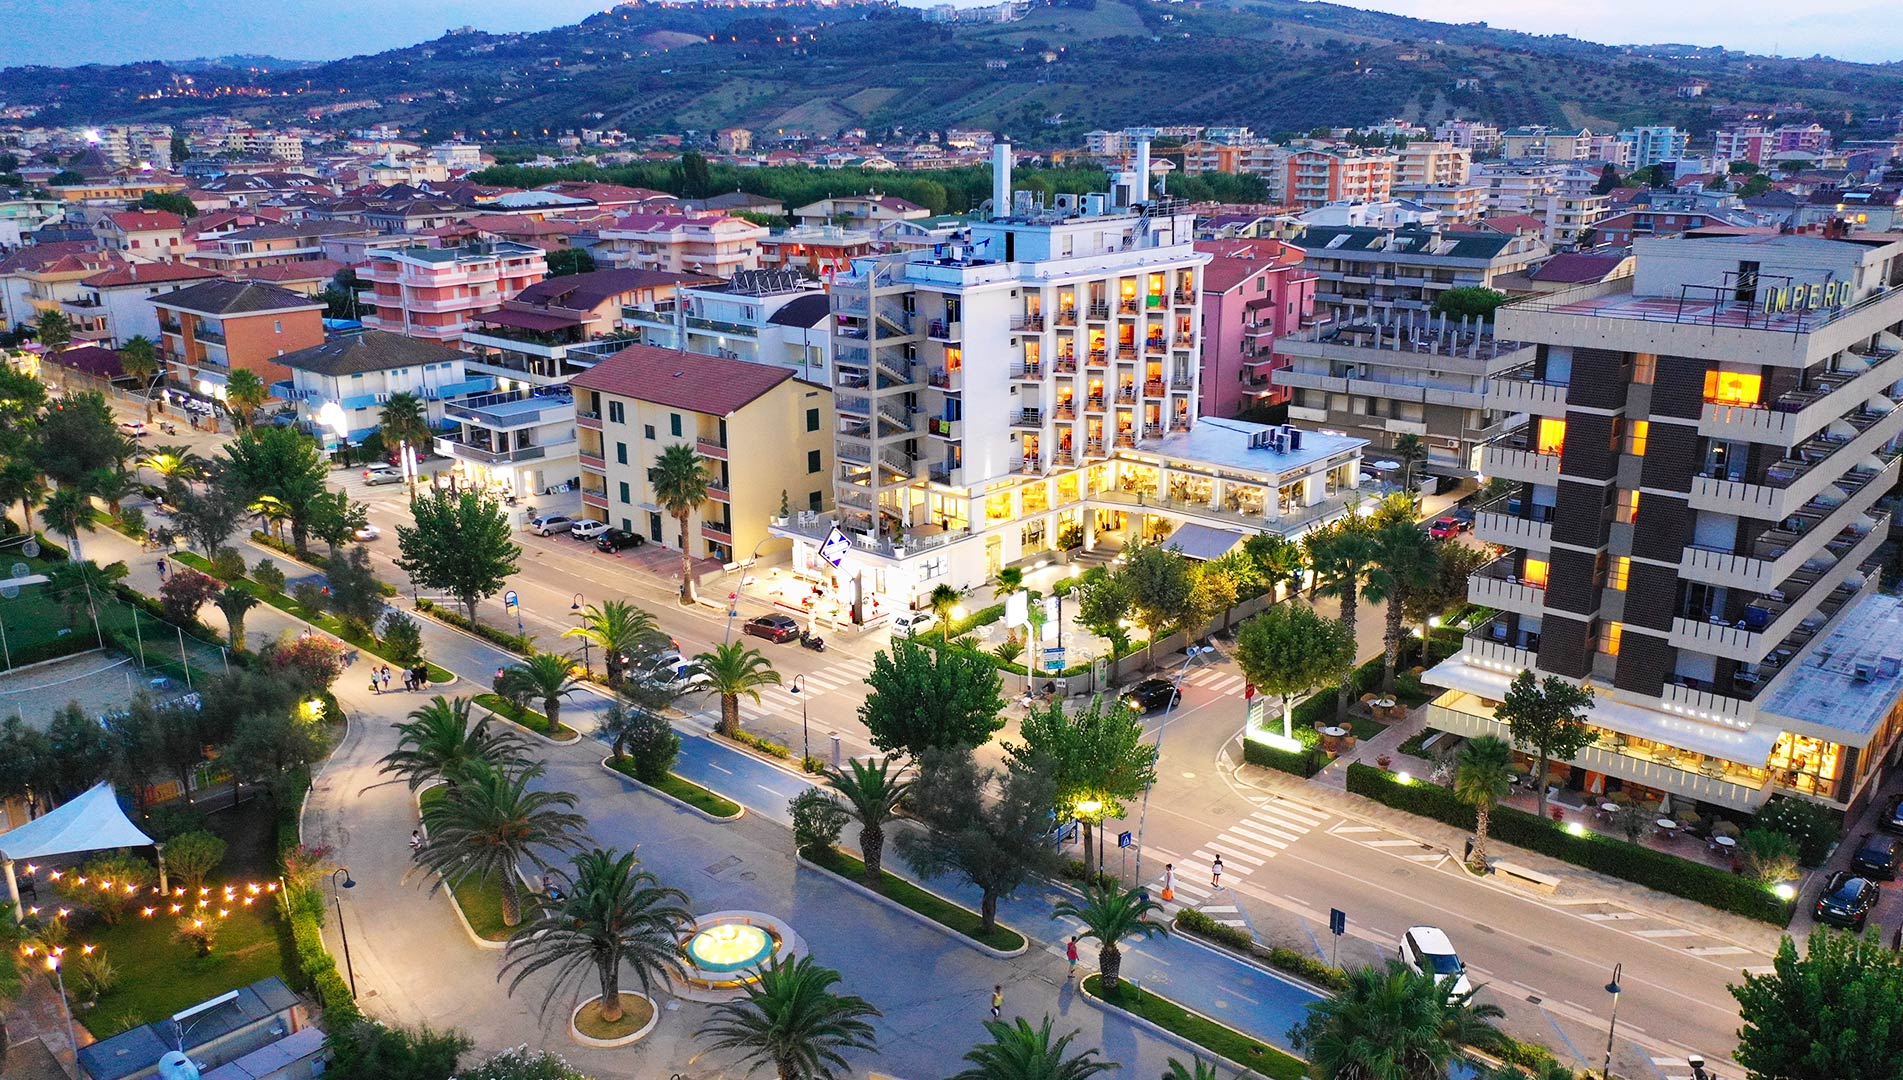 Hotel Excelsior Alba Adriatica - Albergo 3 stelle sul mare ...